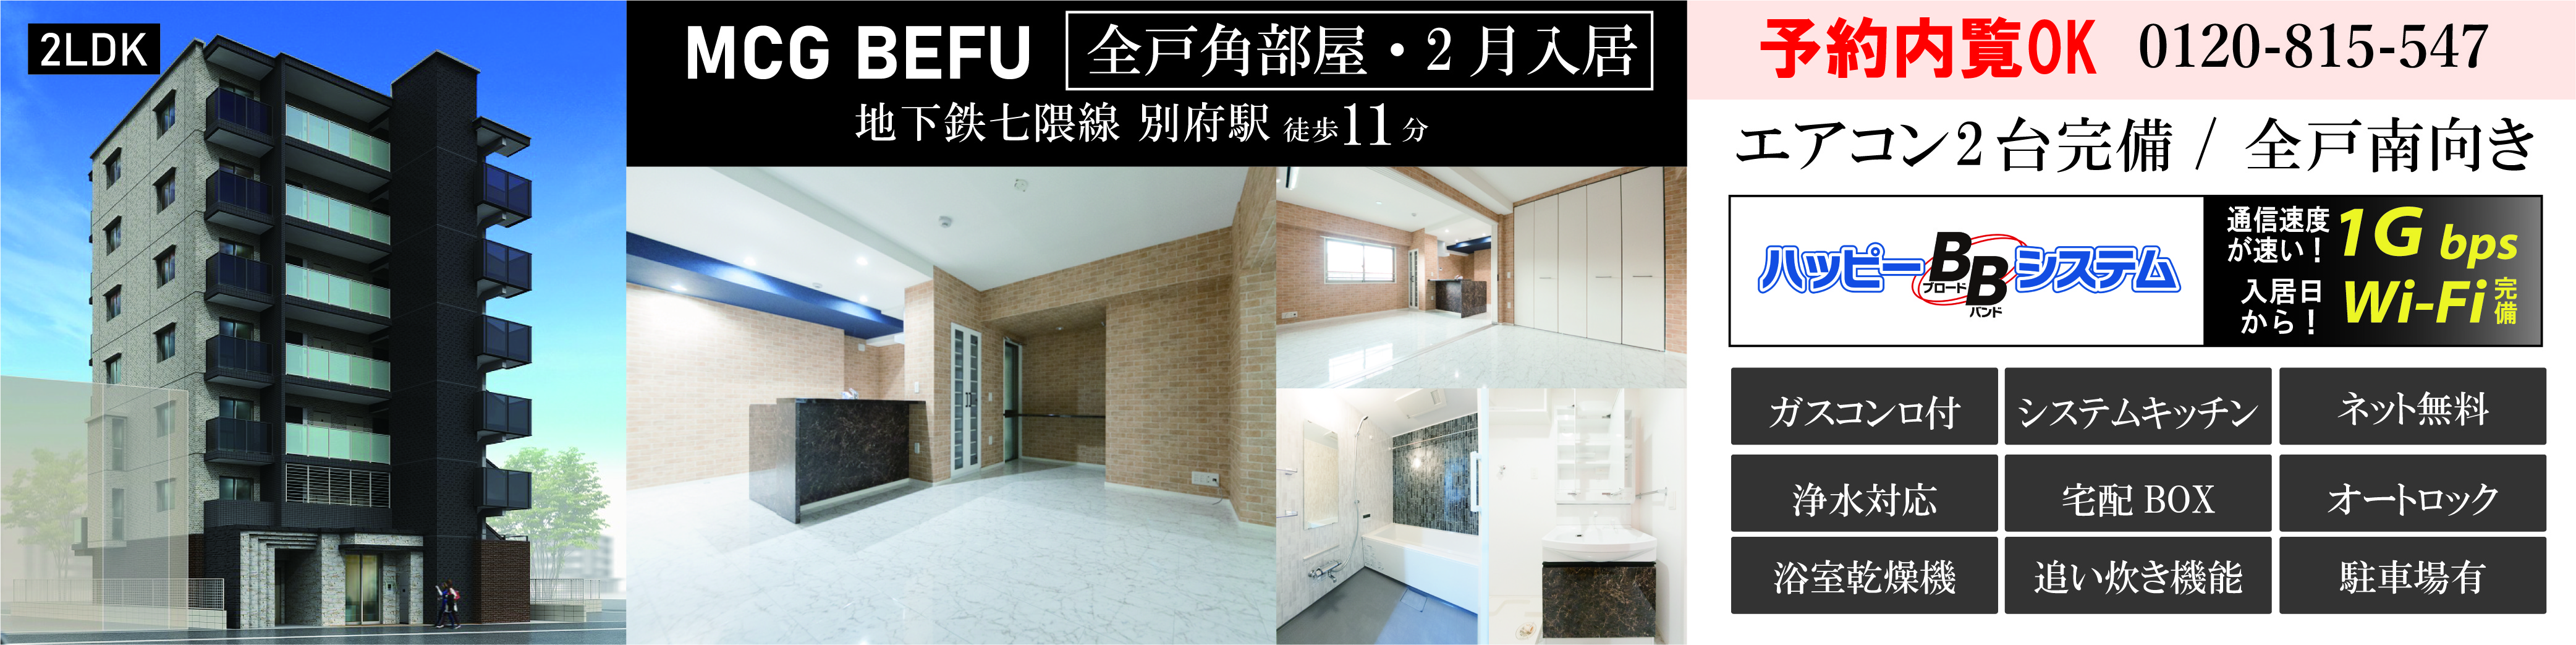 福岡の賃貸 不動産 資産活用情報 いい部屋みつかるハッピーハウス